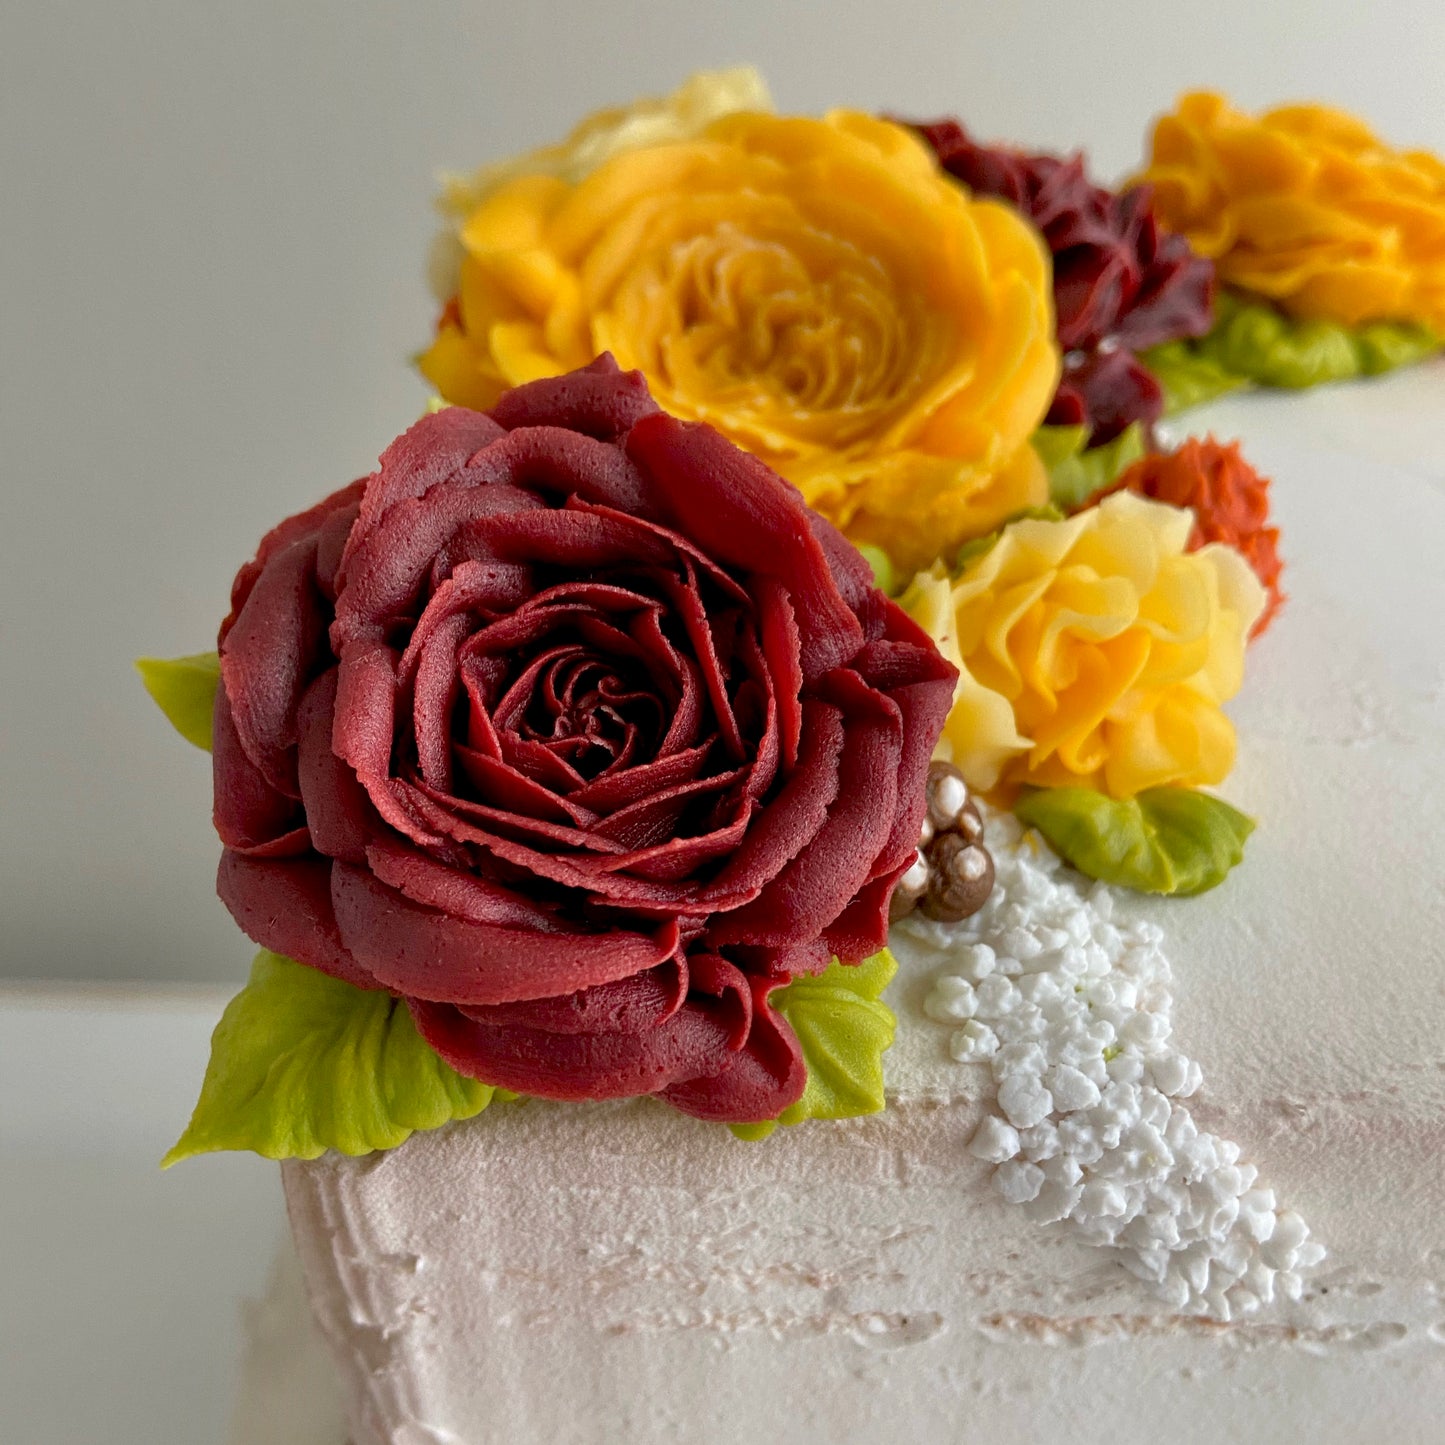 Rustic Fall Wedding Cake